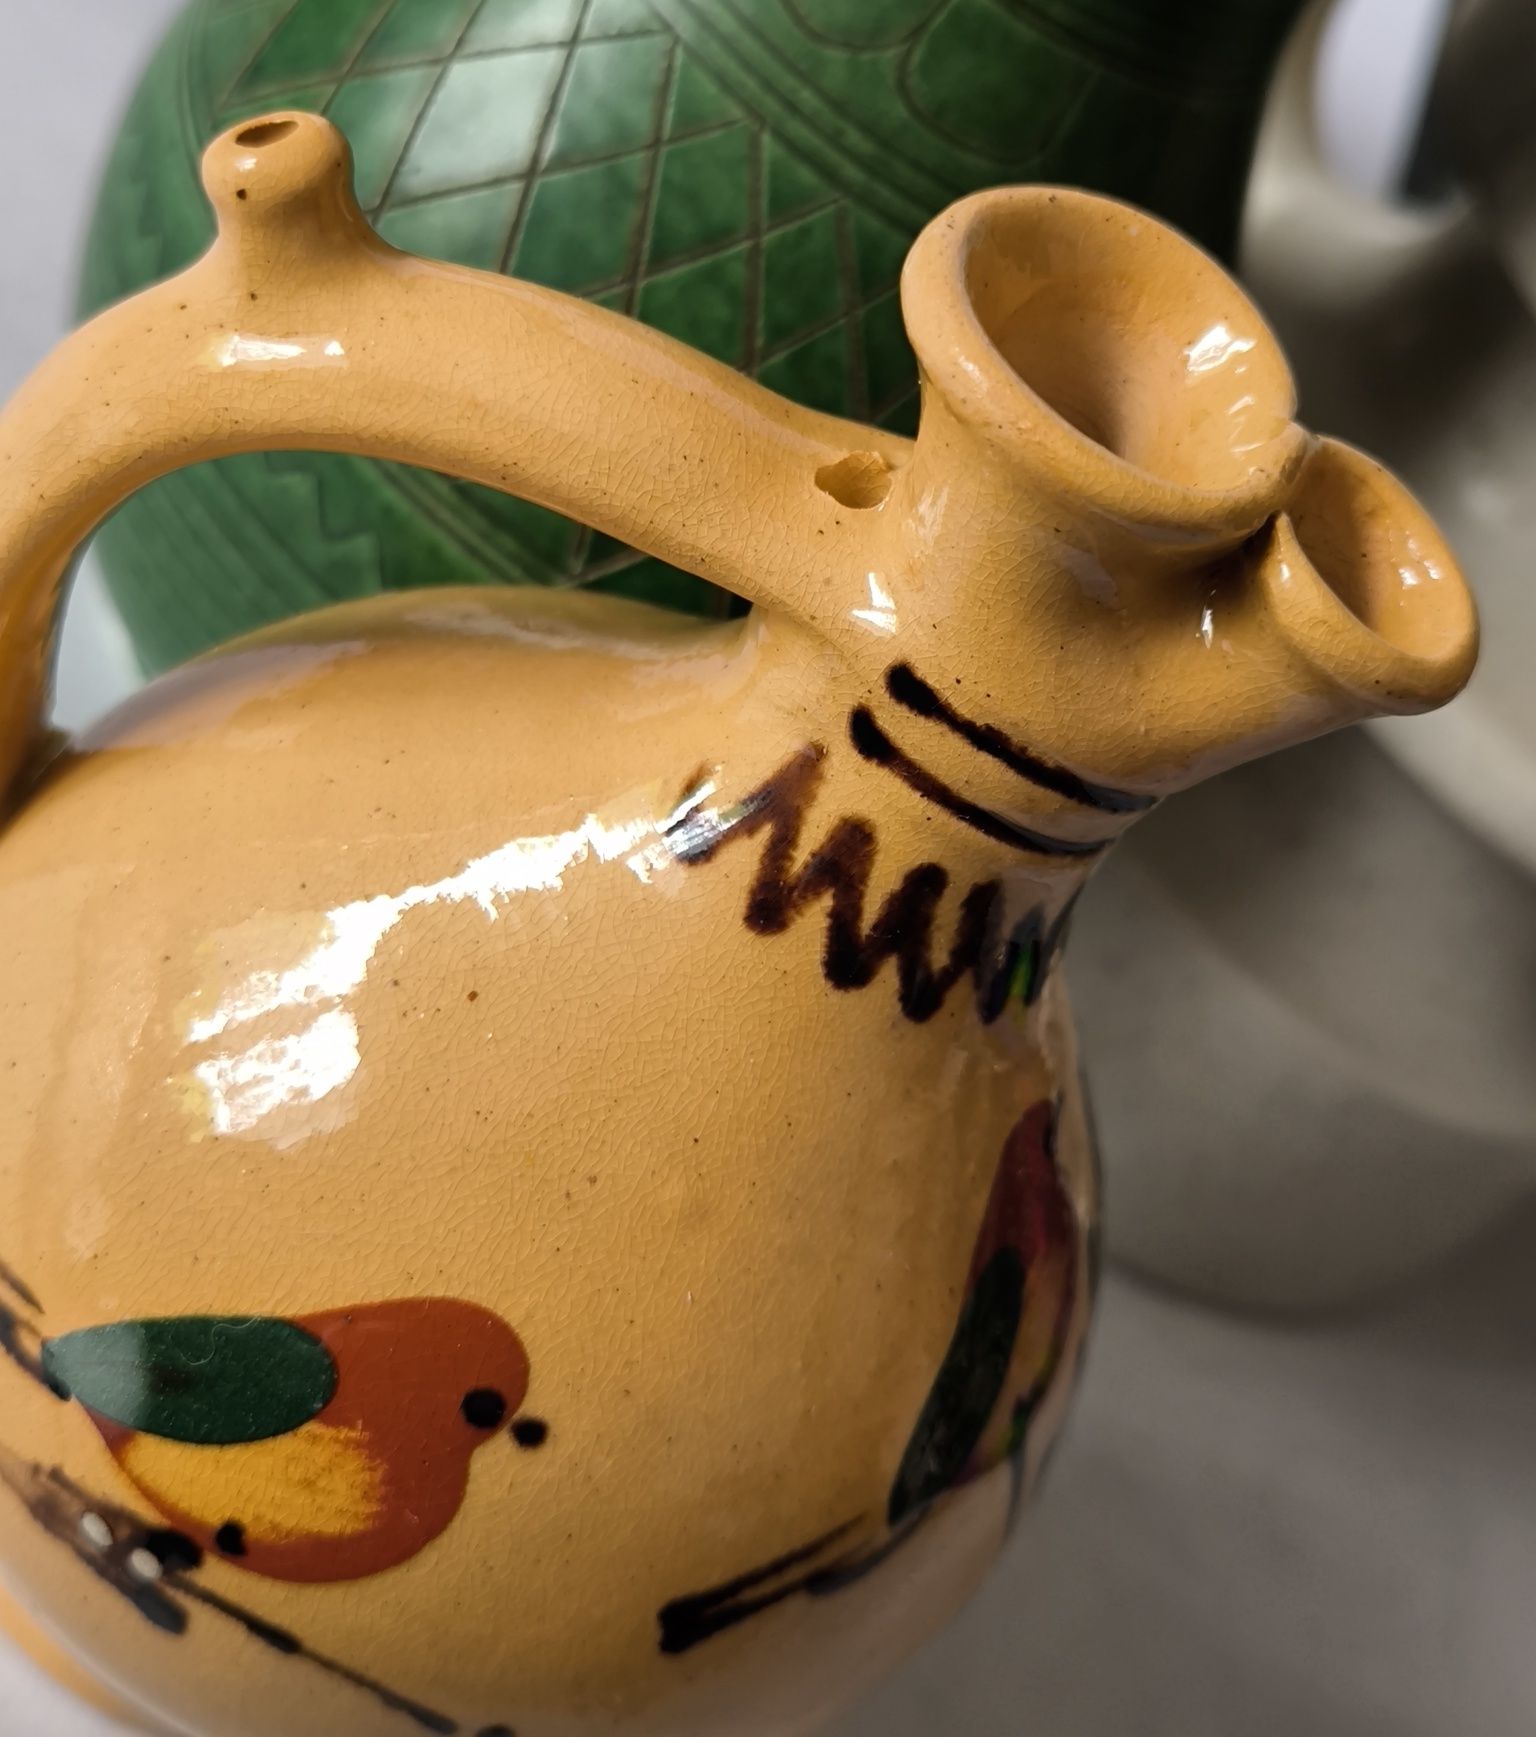 Dzbanek z ptaszkami piękna stara ceramika